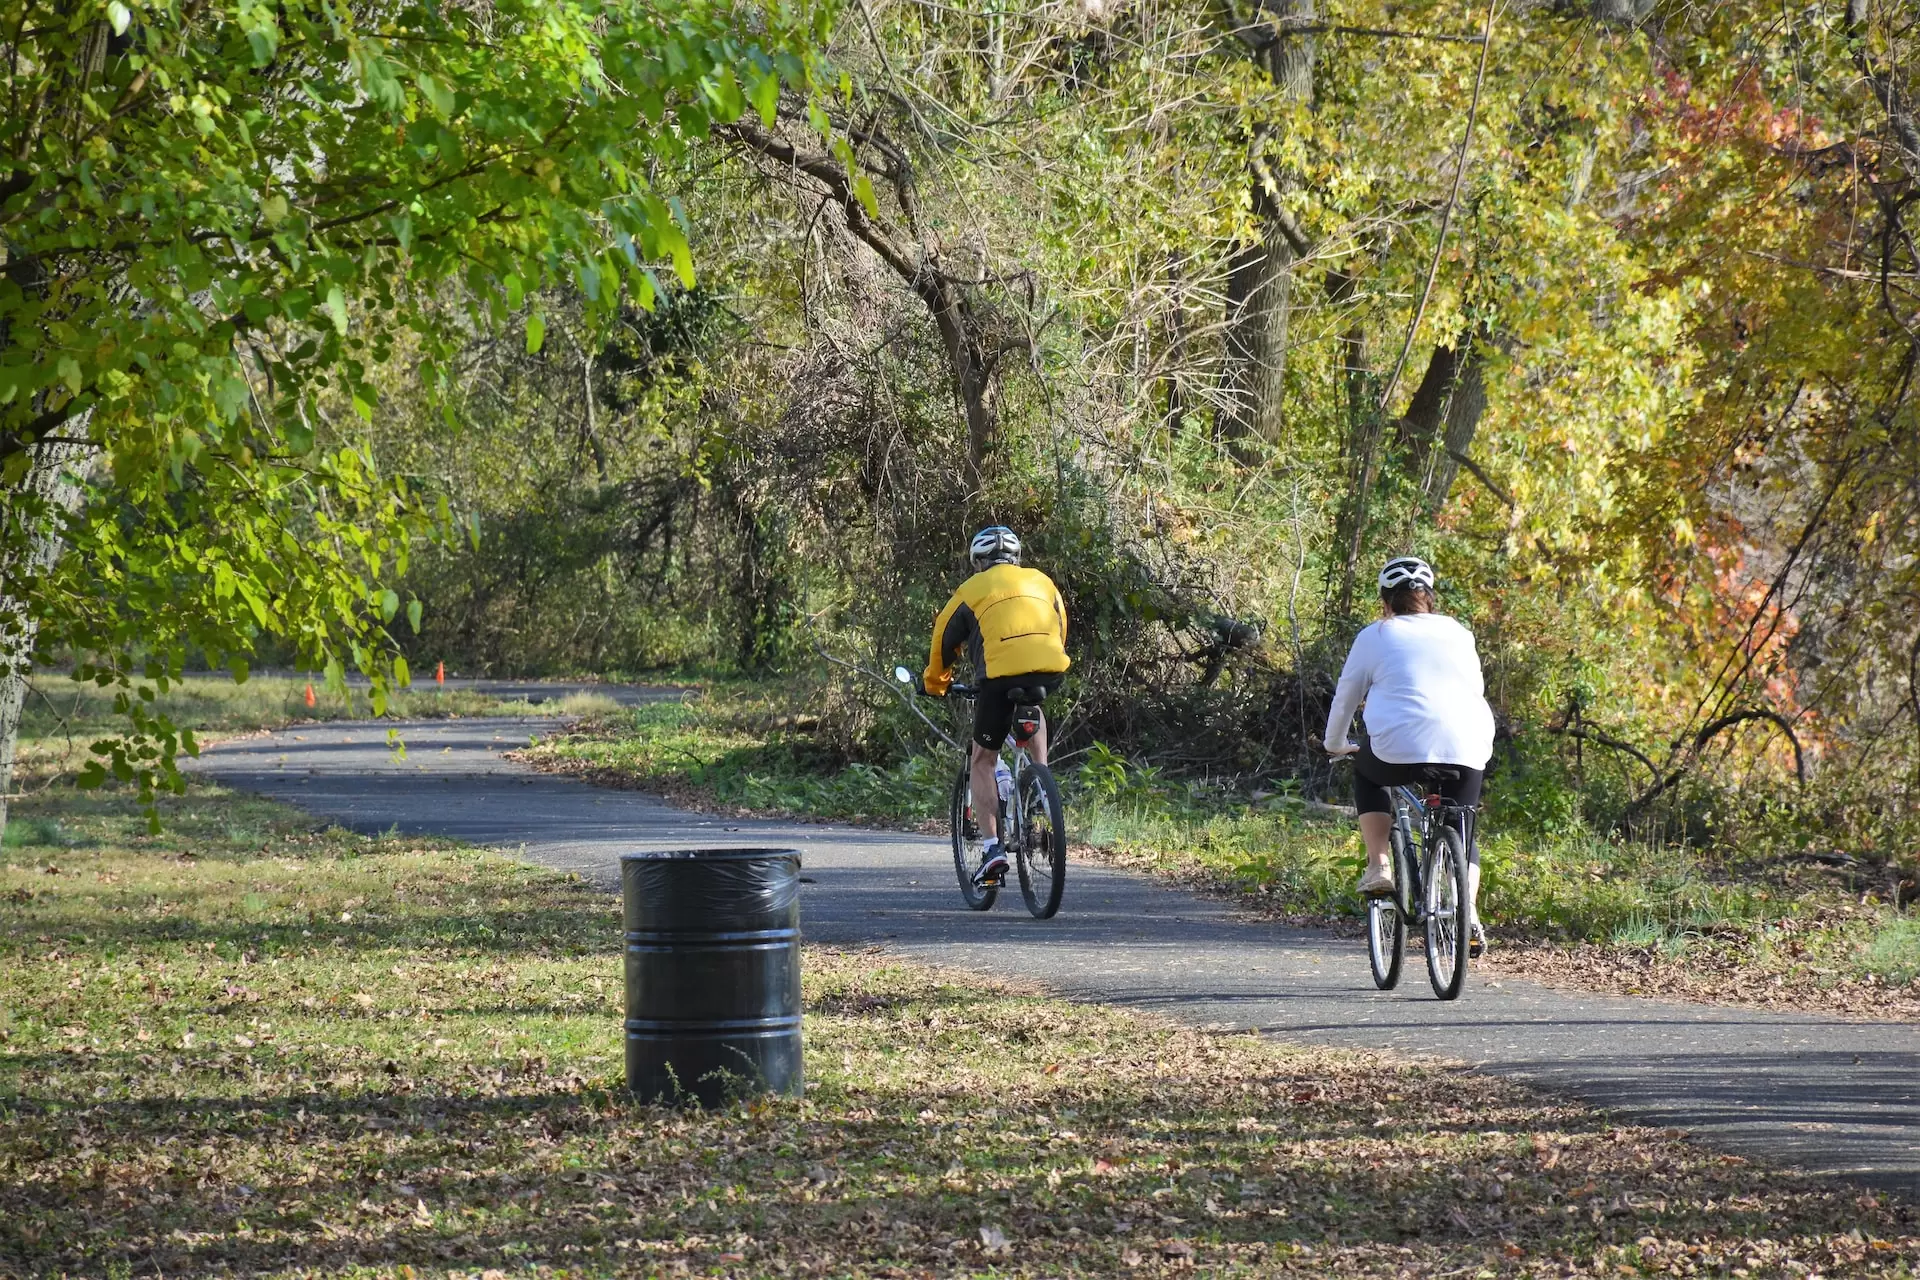 Bike riders in the Hanover NJ park